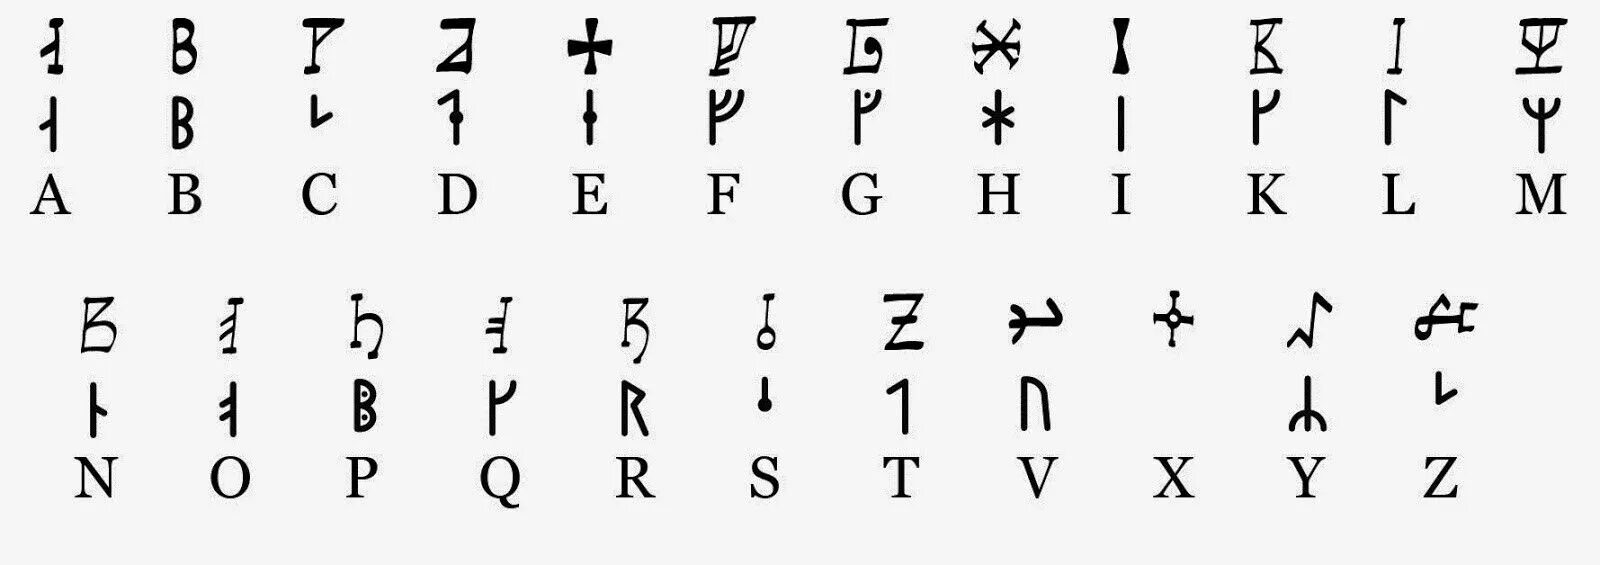 Codex rune. Nordic Alphabet. Древнеисландский. Old English Alphabet Runes. Medieval Runes.